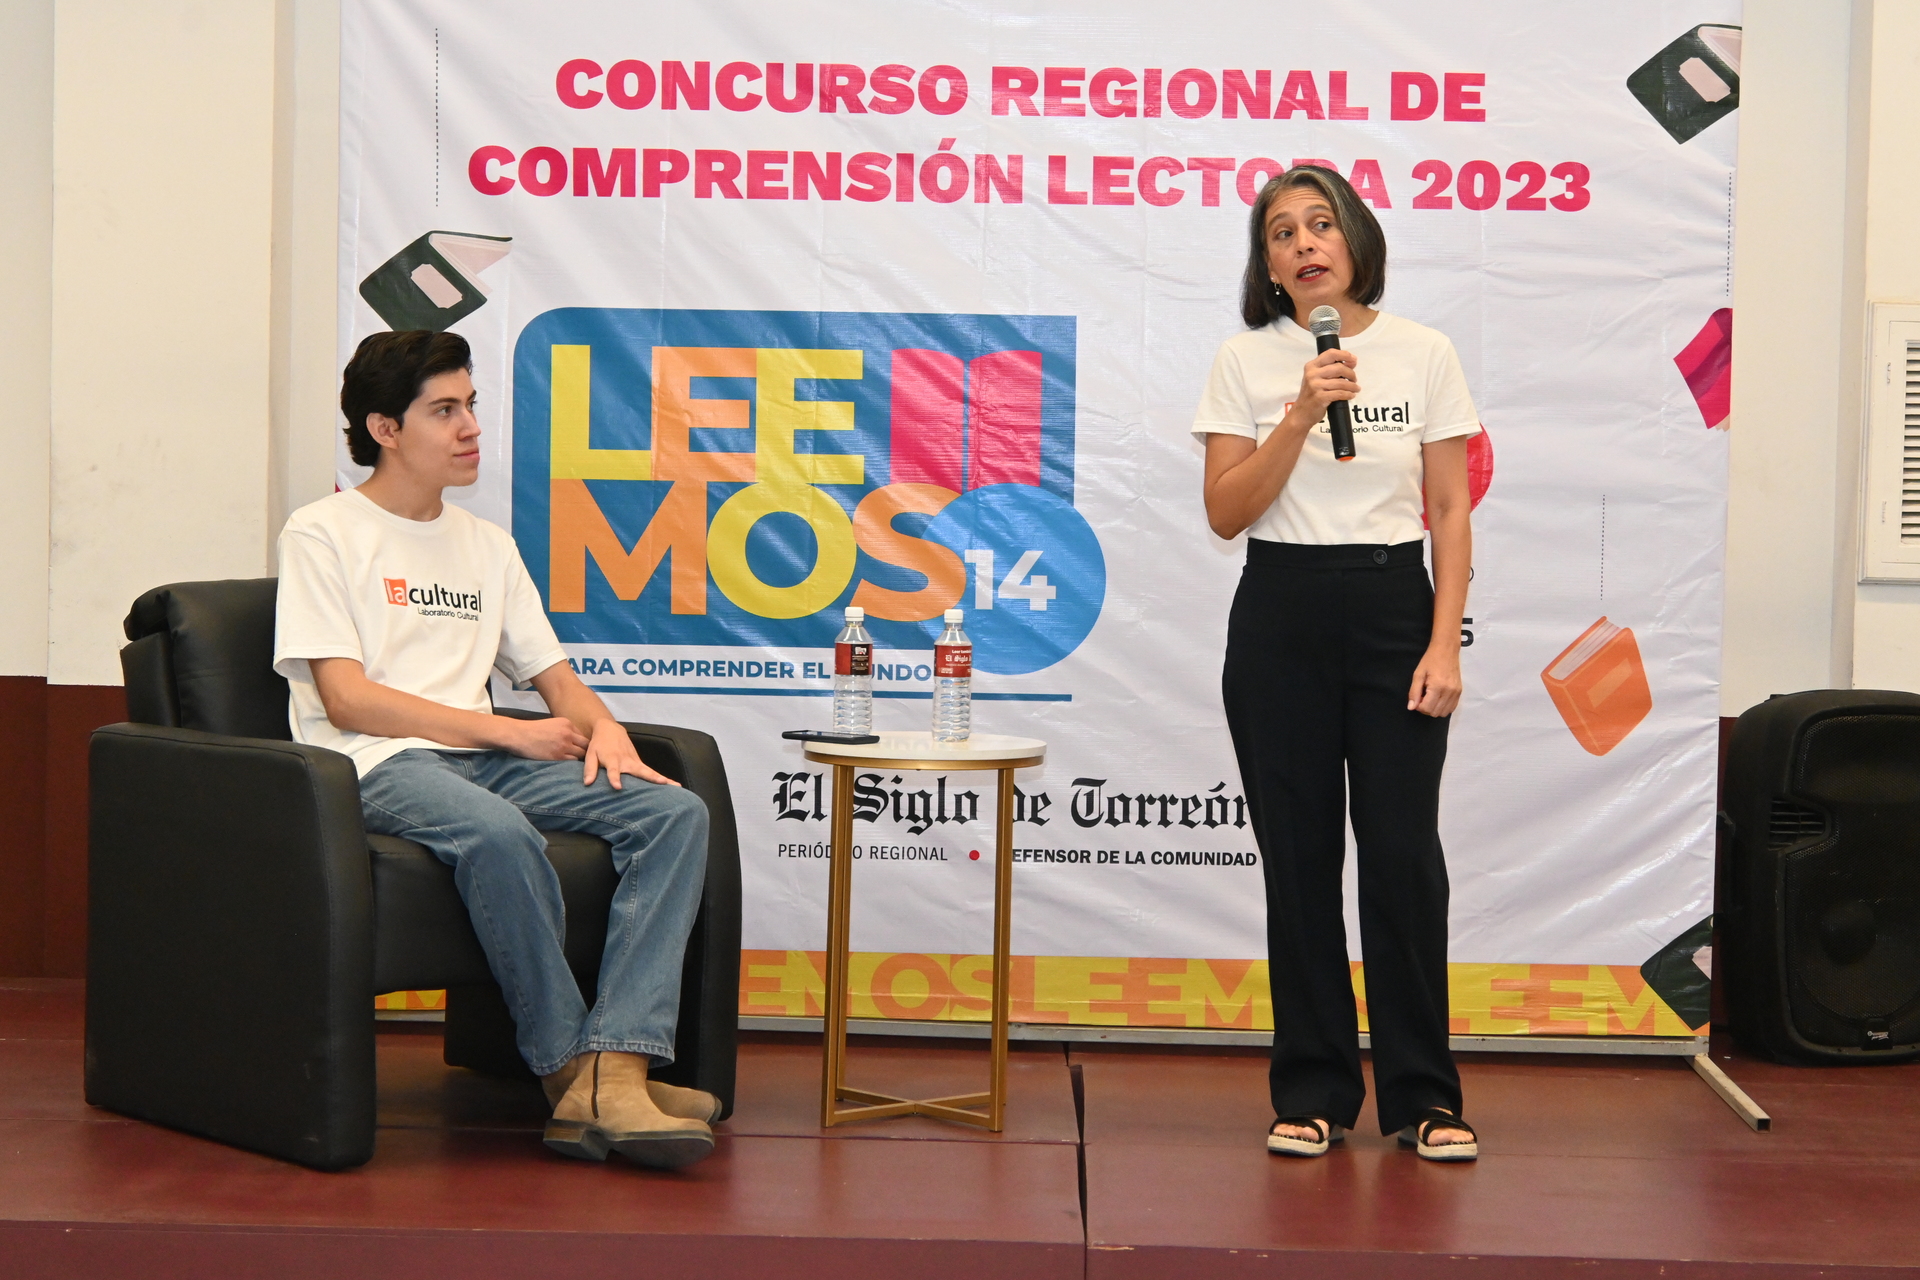 Presentan Leemos, Concurso Regional de Comprensión Lectora 2023